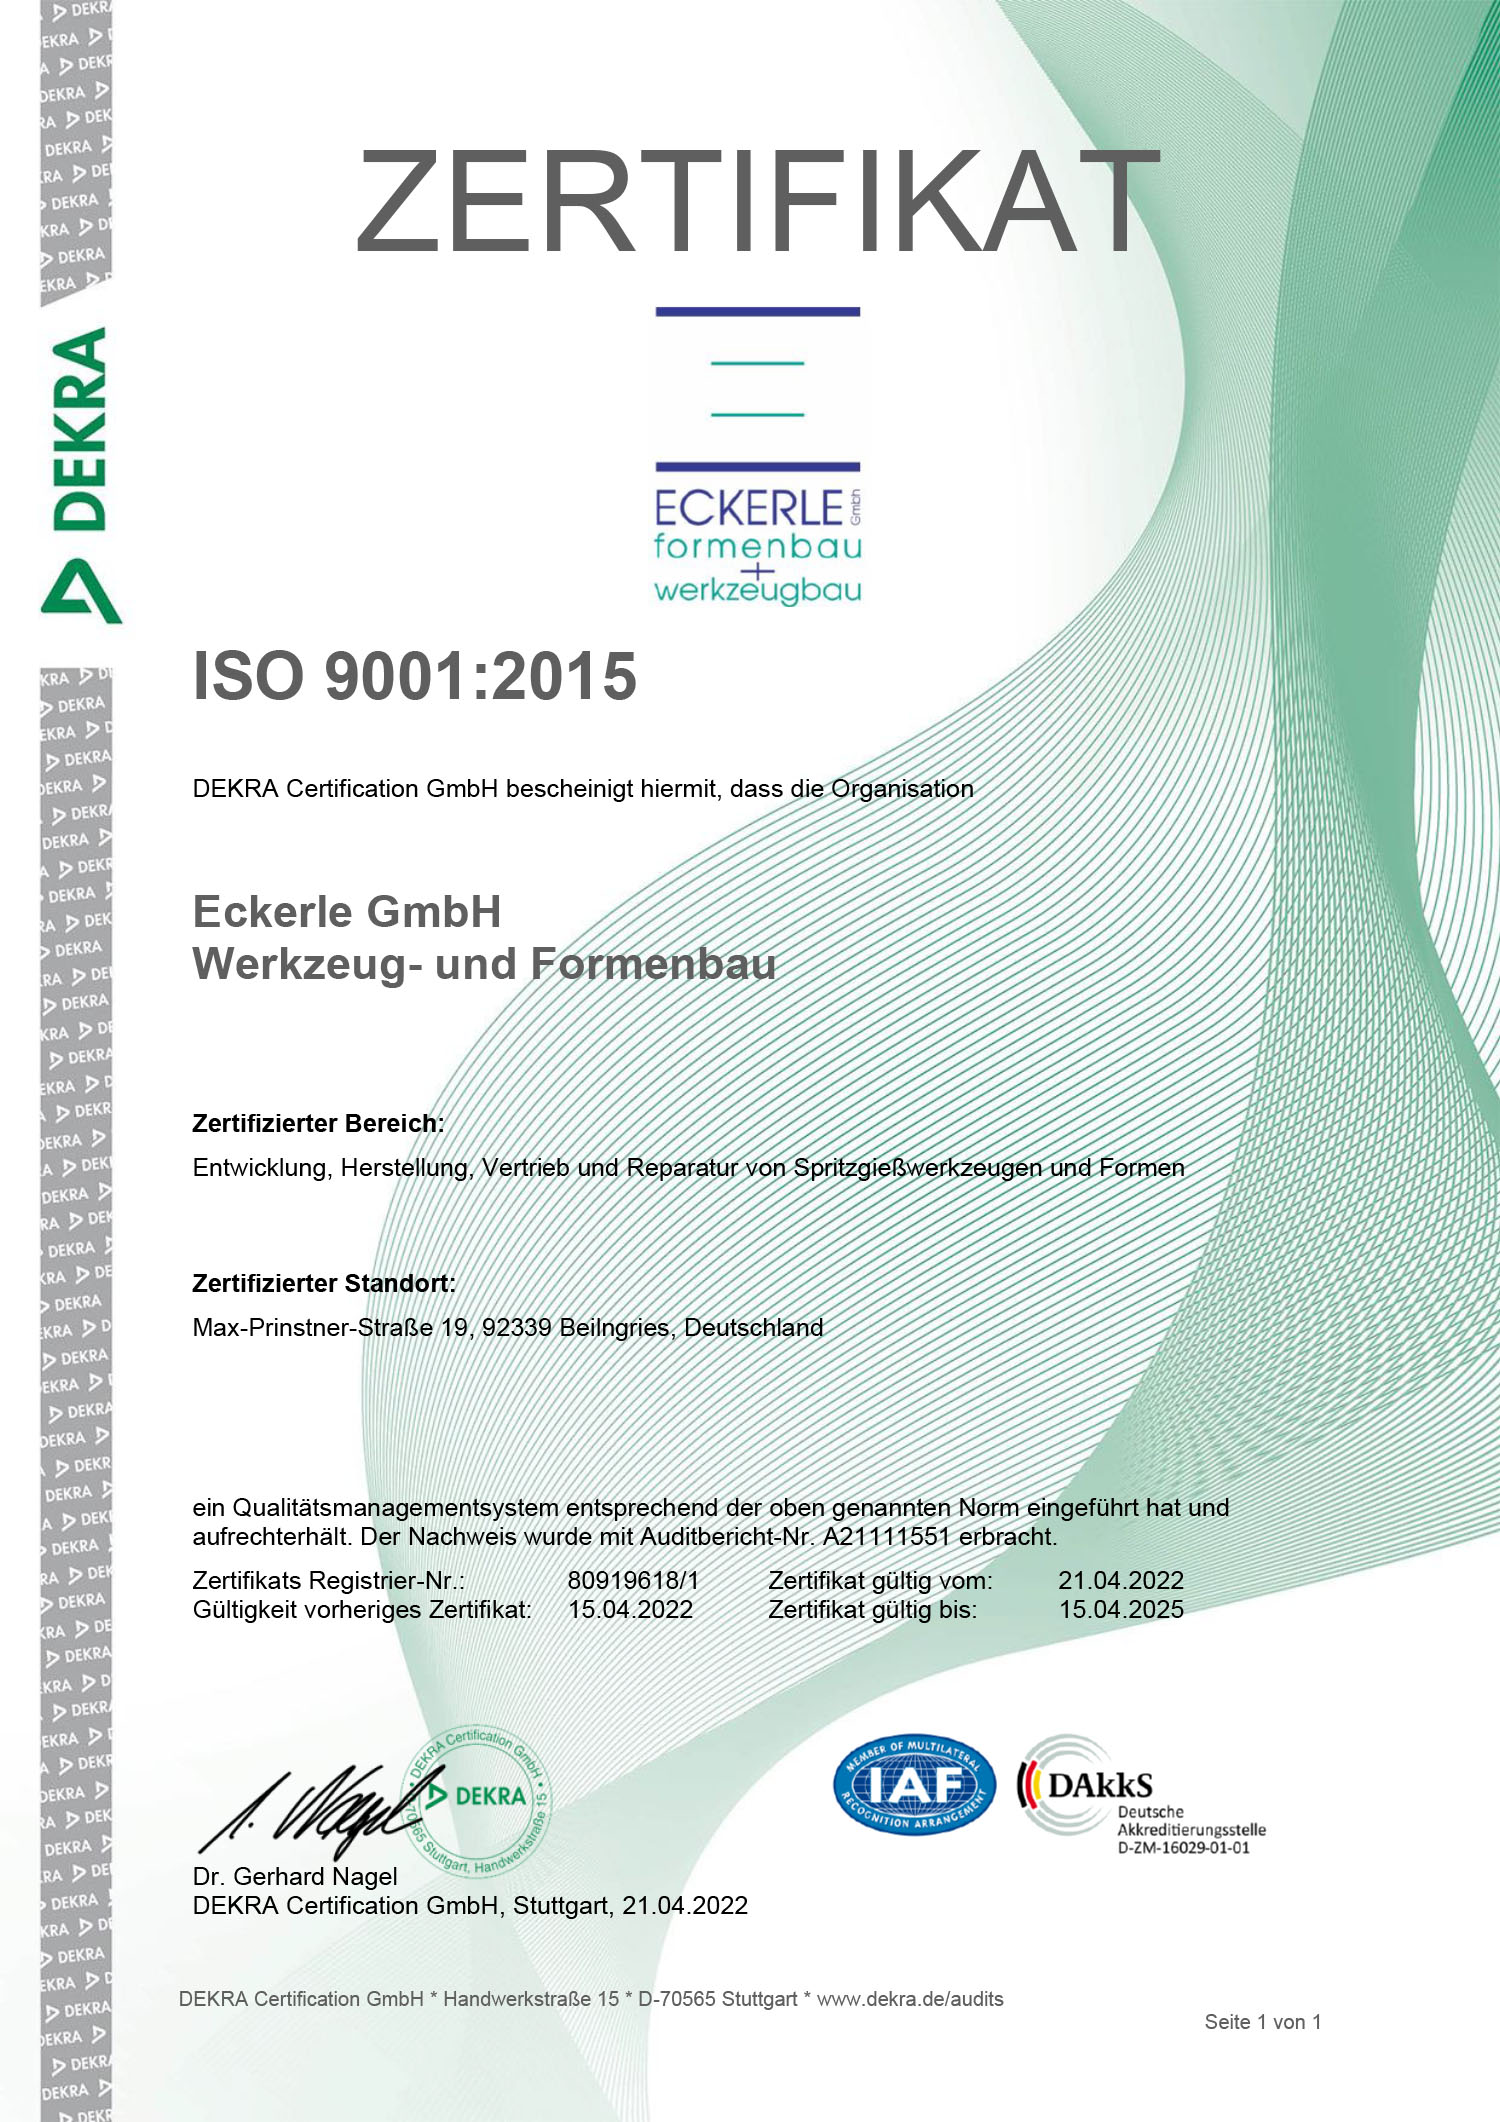 Zertifikat ECKERLE formenbau + werkzeubau - ISO 9001:2015